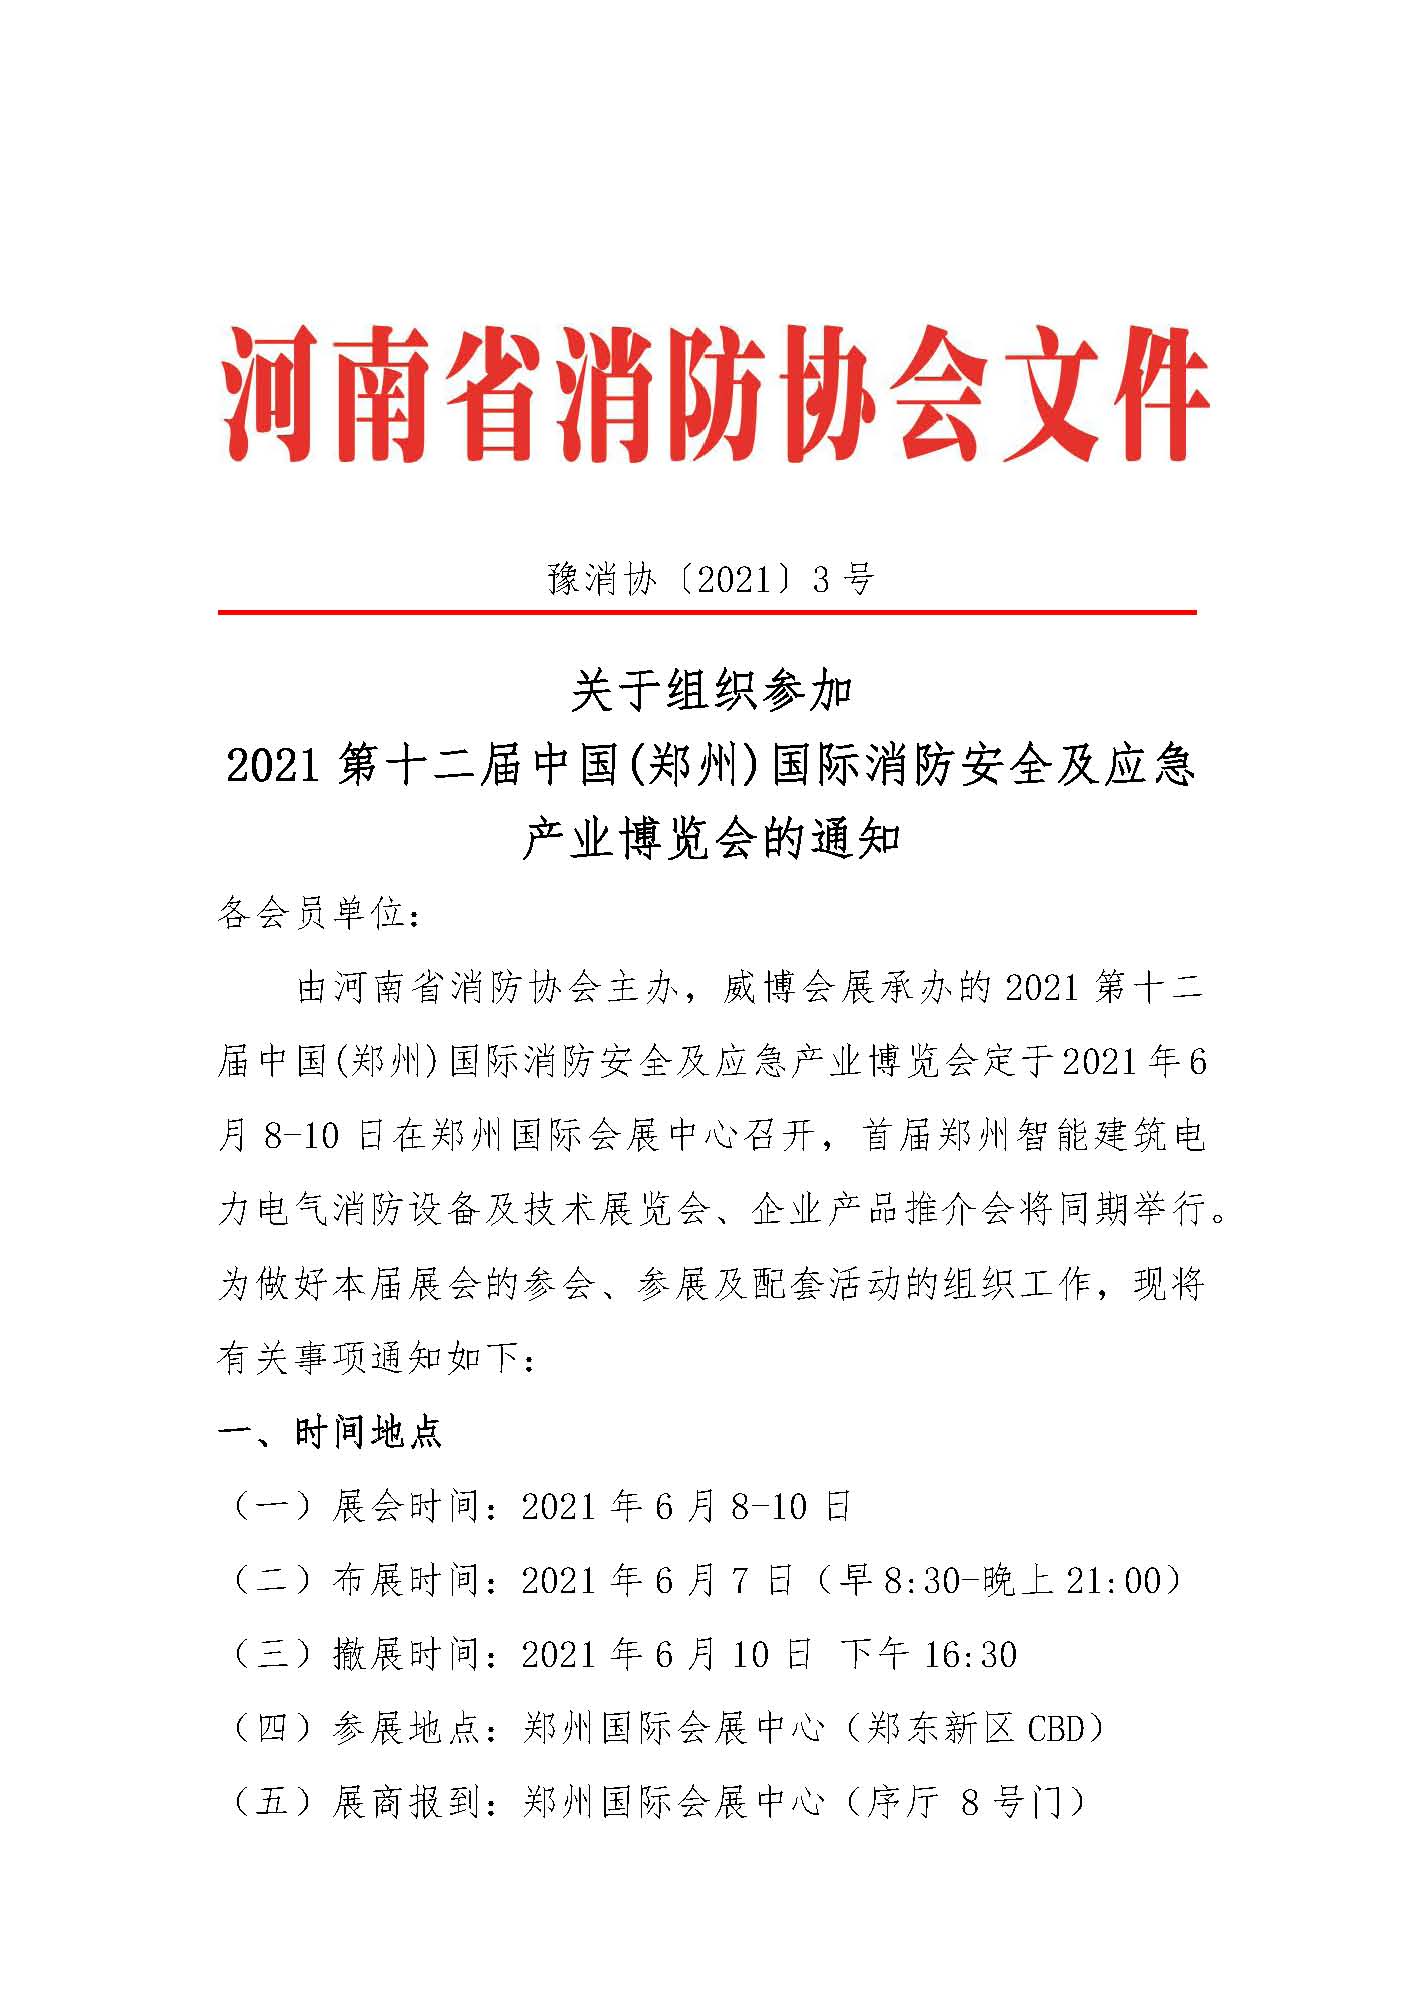 河南省消防协会关于邀请参加“2021年第12届郑州国际消防展”的通知